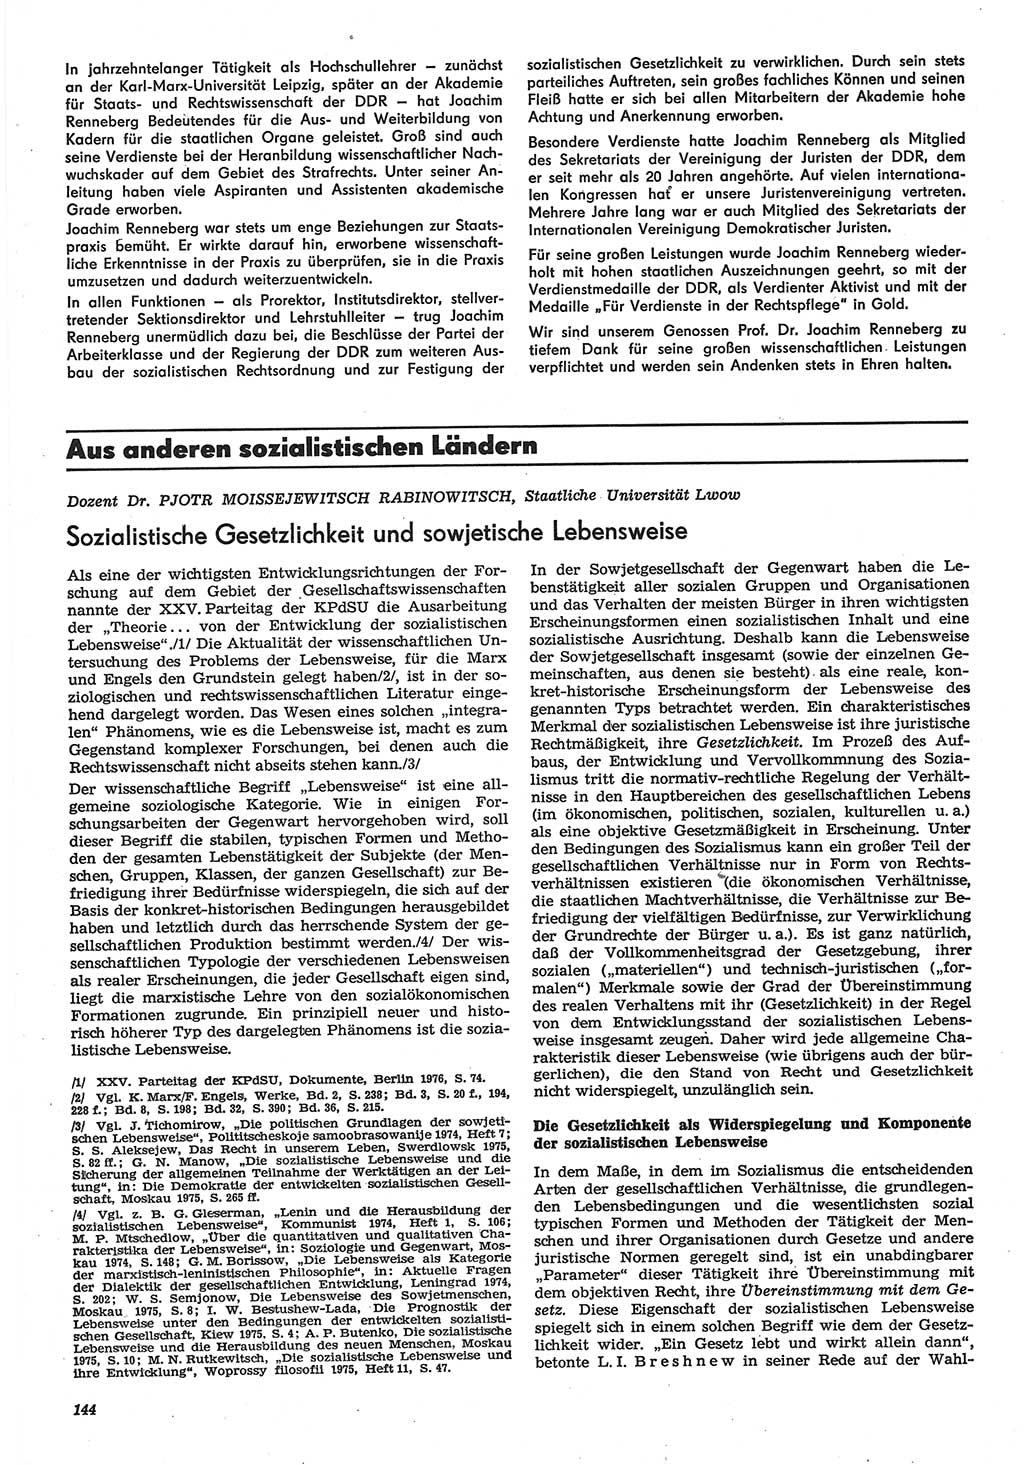 Neue Justiz (NJ), Zeitschrift für Recht und Rechtswissenschaft-Zeitschrift, sozialistisches Recht und Gesetzlichkeit, 31. Jahrgang 1977, Seite 144 (NJ DDR 1977, S. 144)